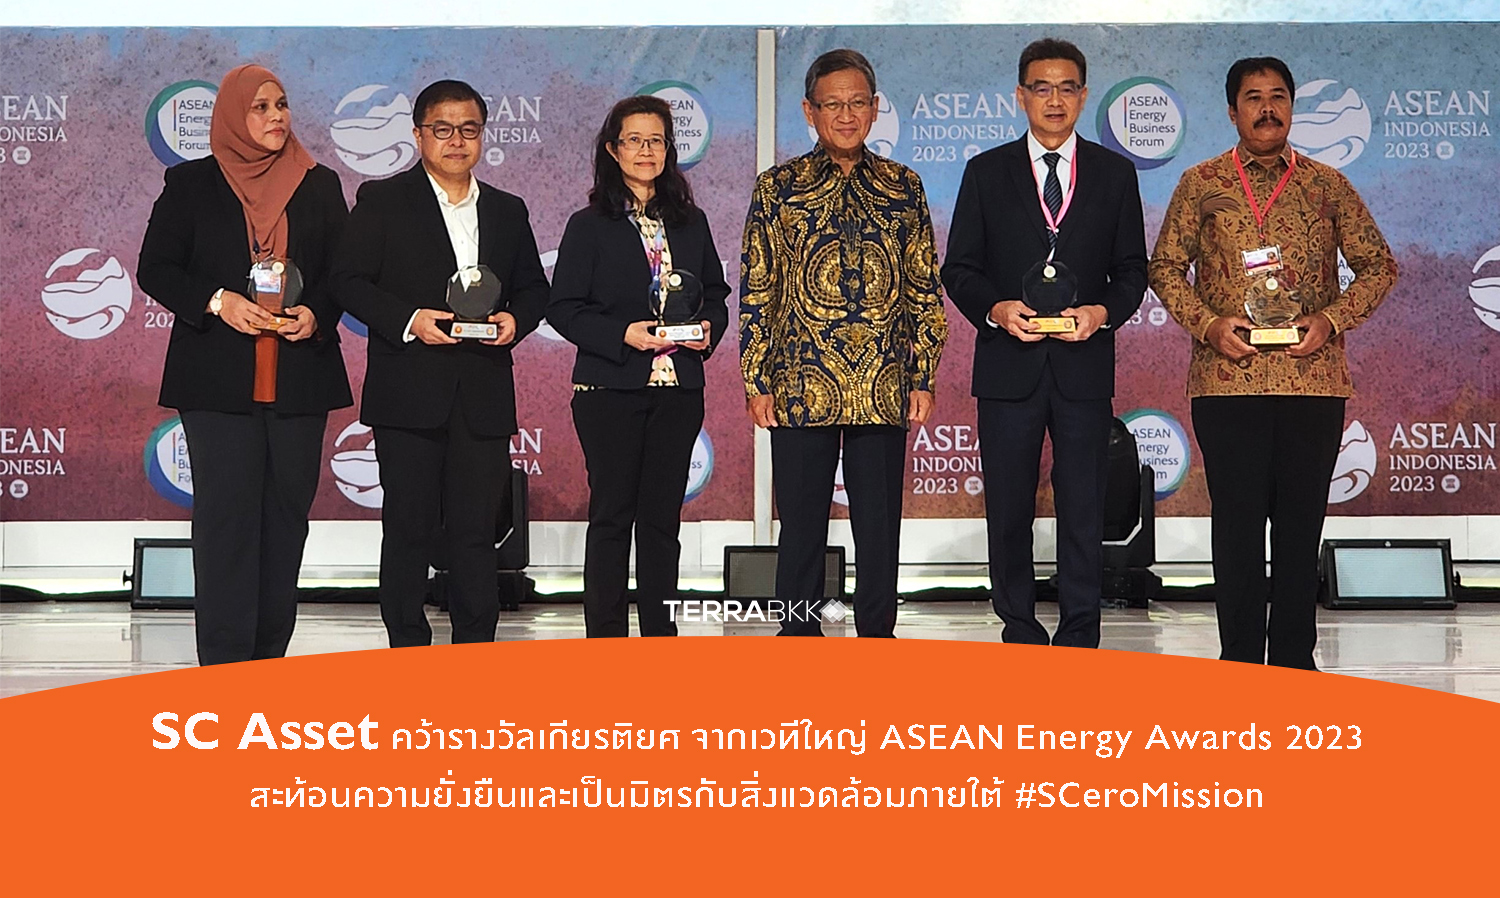 SC Asset คว้ารางวัลเกียรติยศ จากเวทีใหญ่ ASEAN Energy Awards 2023 สะท้อนความยั่งยืนและเป็นมิตรกับสิ่งแวดล้อมภายใต้ #SCeroMission